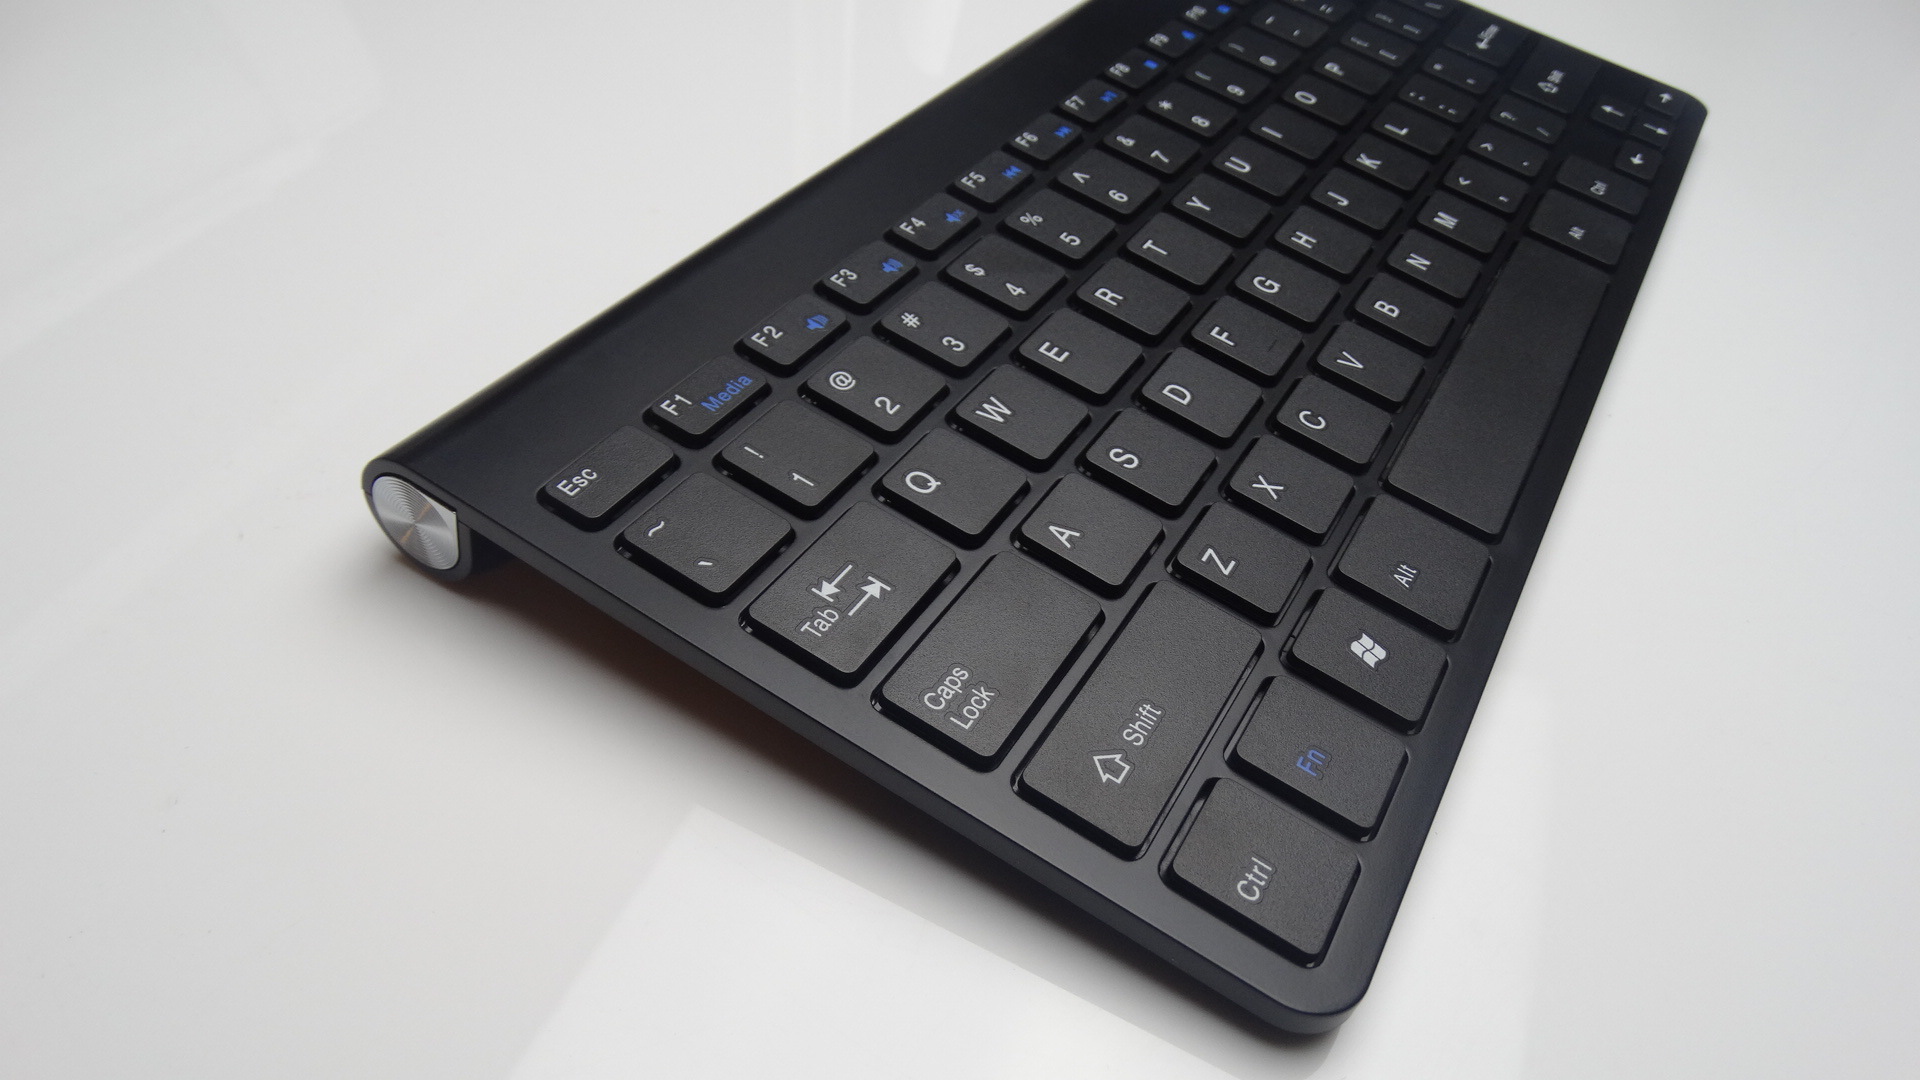 2.4G Wireless Keyboard Mini Scissor Desktop Tablet PC Keyboard Business Smart Portable Keyboard